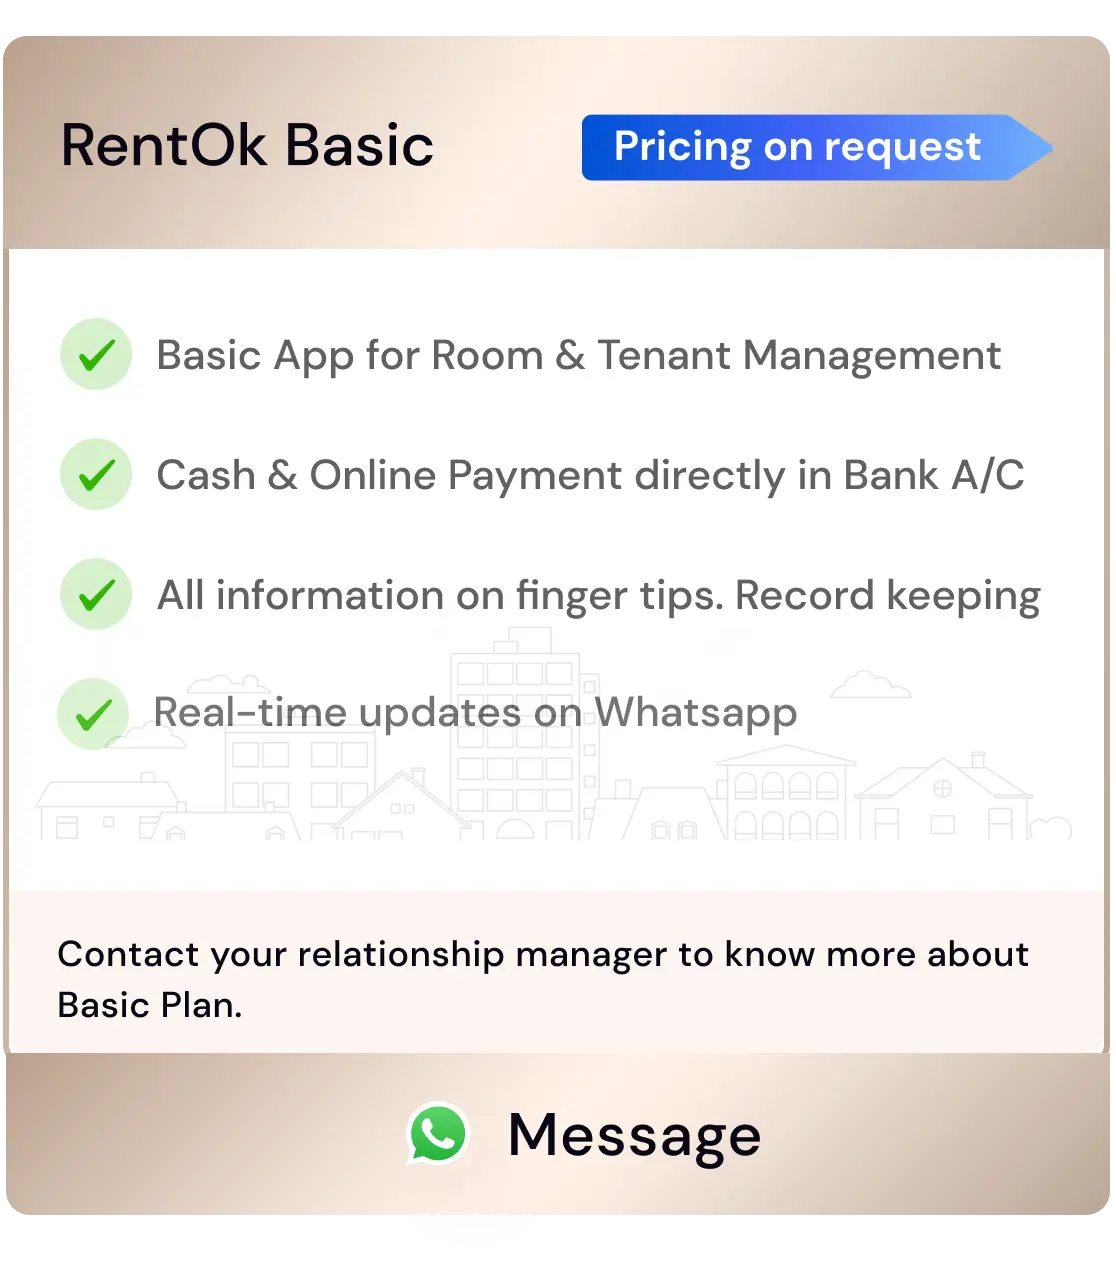 RentOk Basic Plan